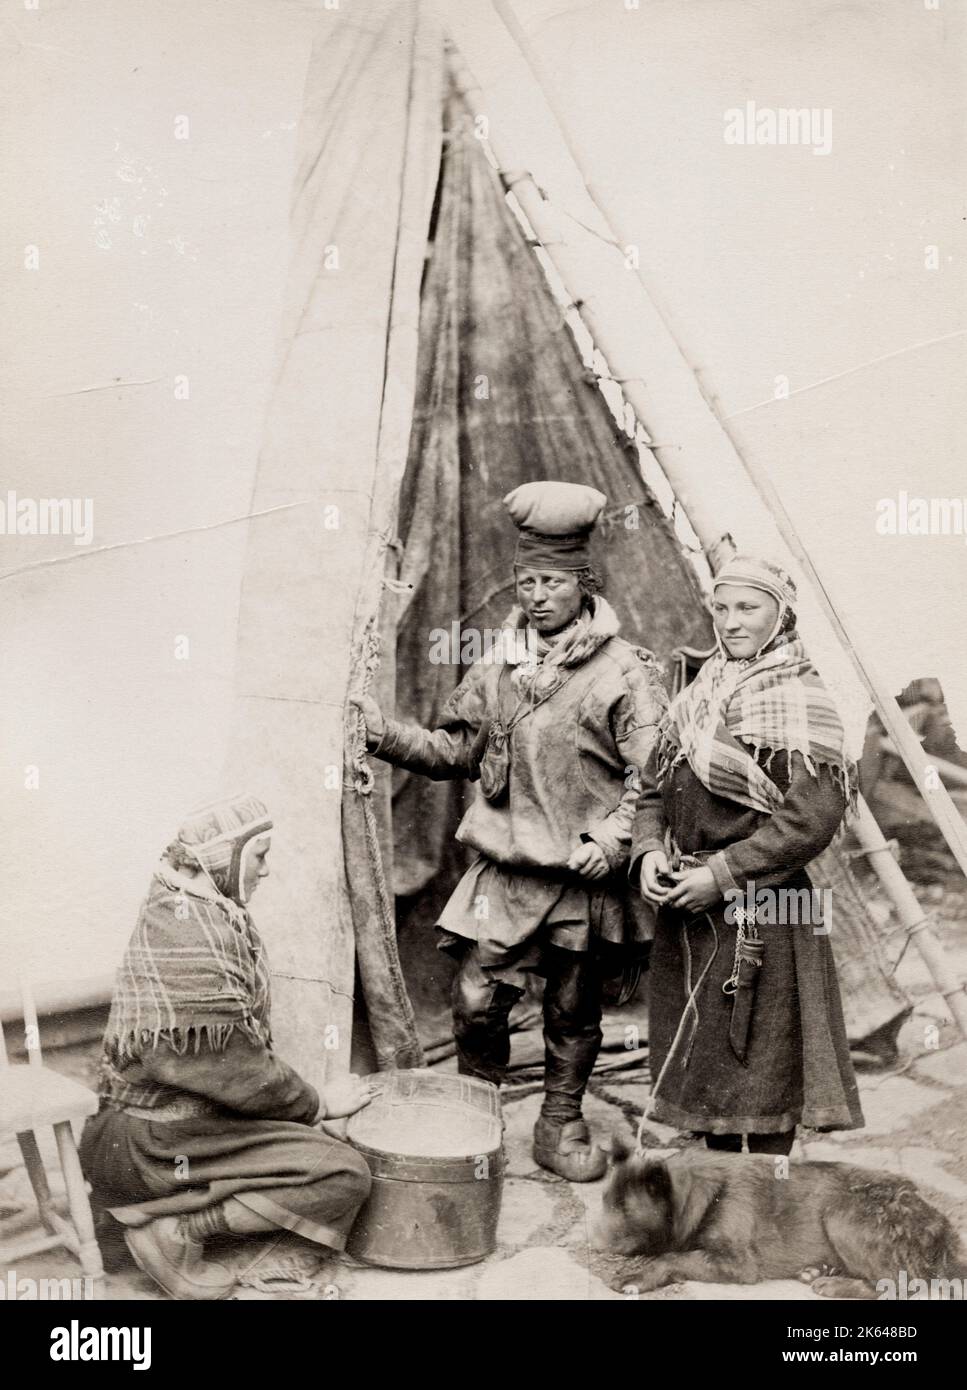 Photographie vintage du XIXe siècle: Les Sâmes et leur chien à l'extérieur d'une tente Finnmarken, Norvège. Studio Axel Lindahl. Banque D'Images